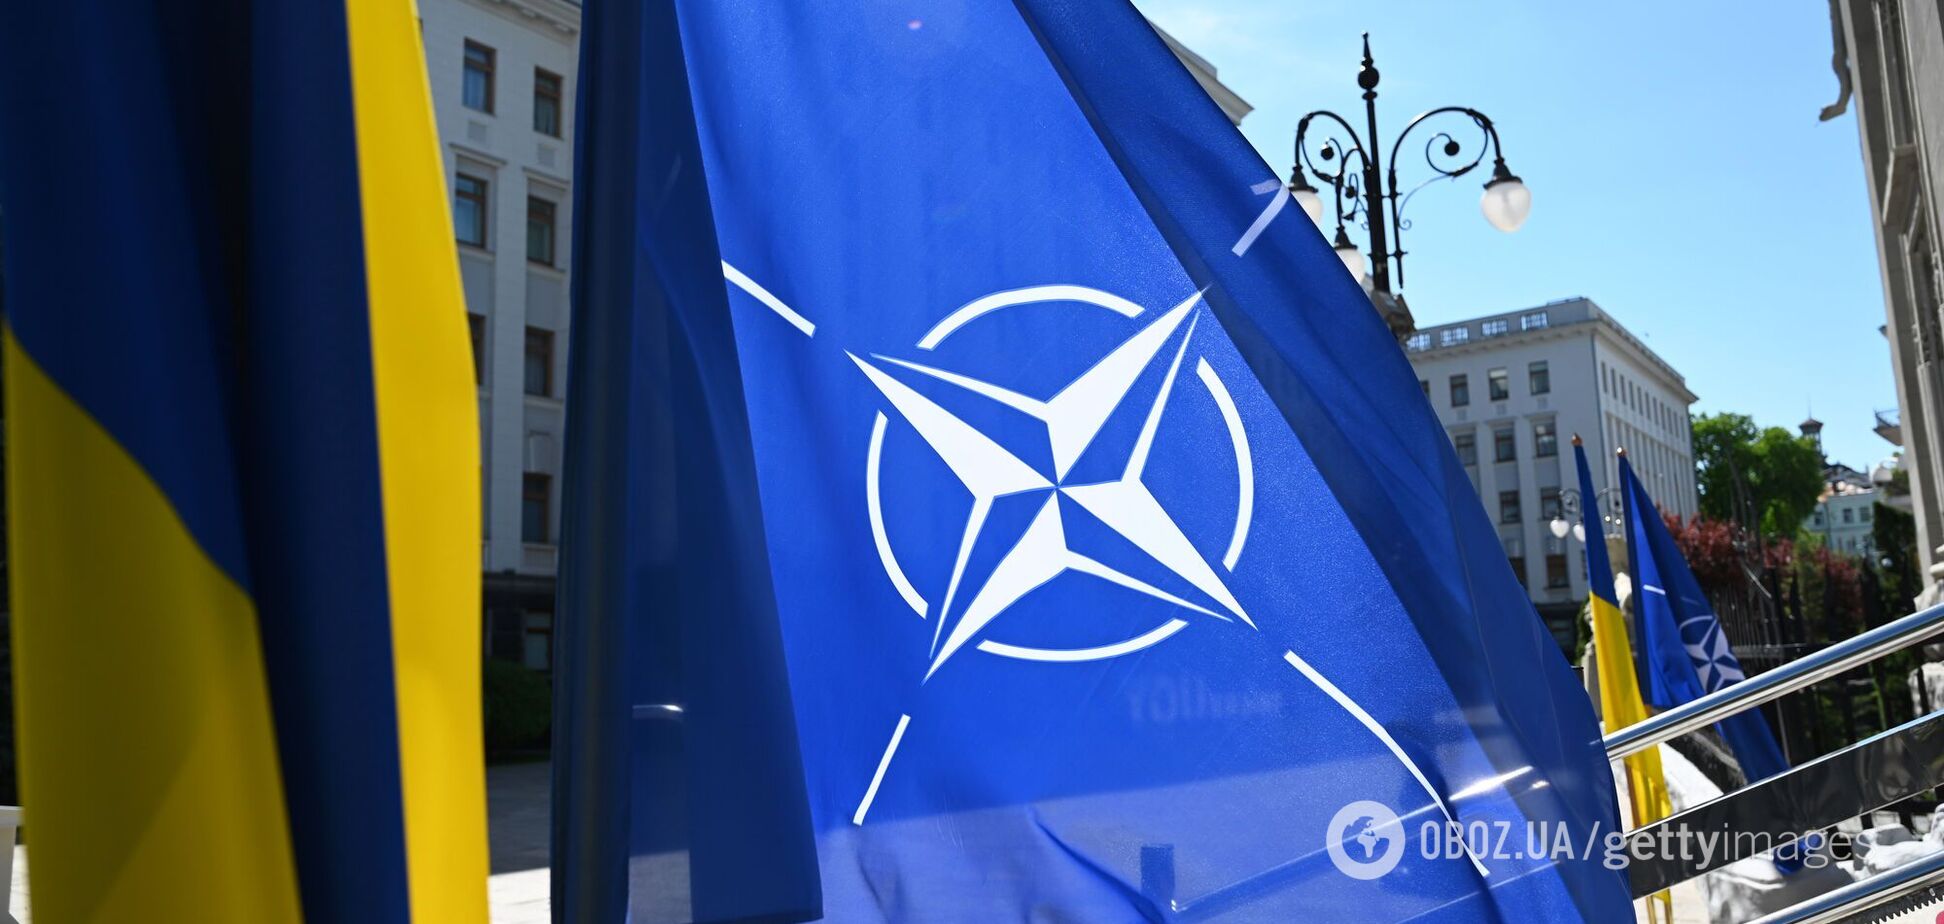 Будут ли войска НАТО в Украине? Западу становится все тяжелее отвечать 'нет'